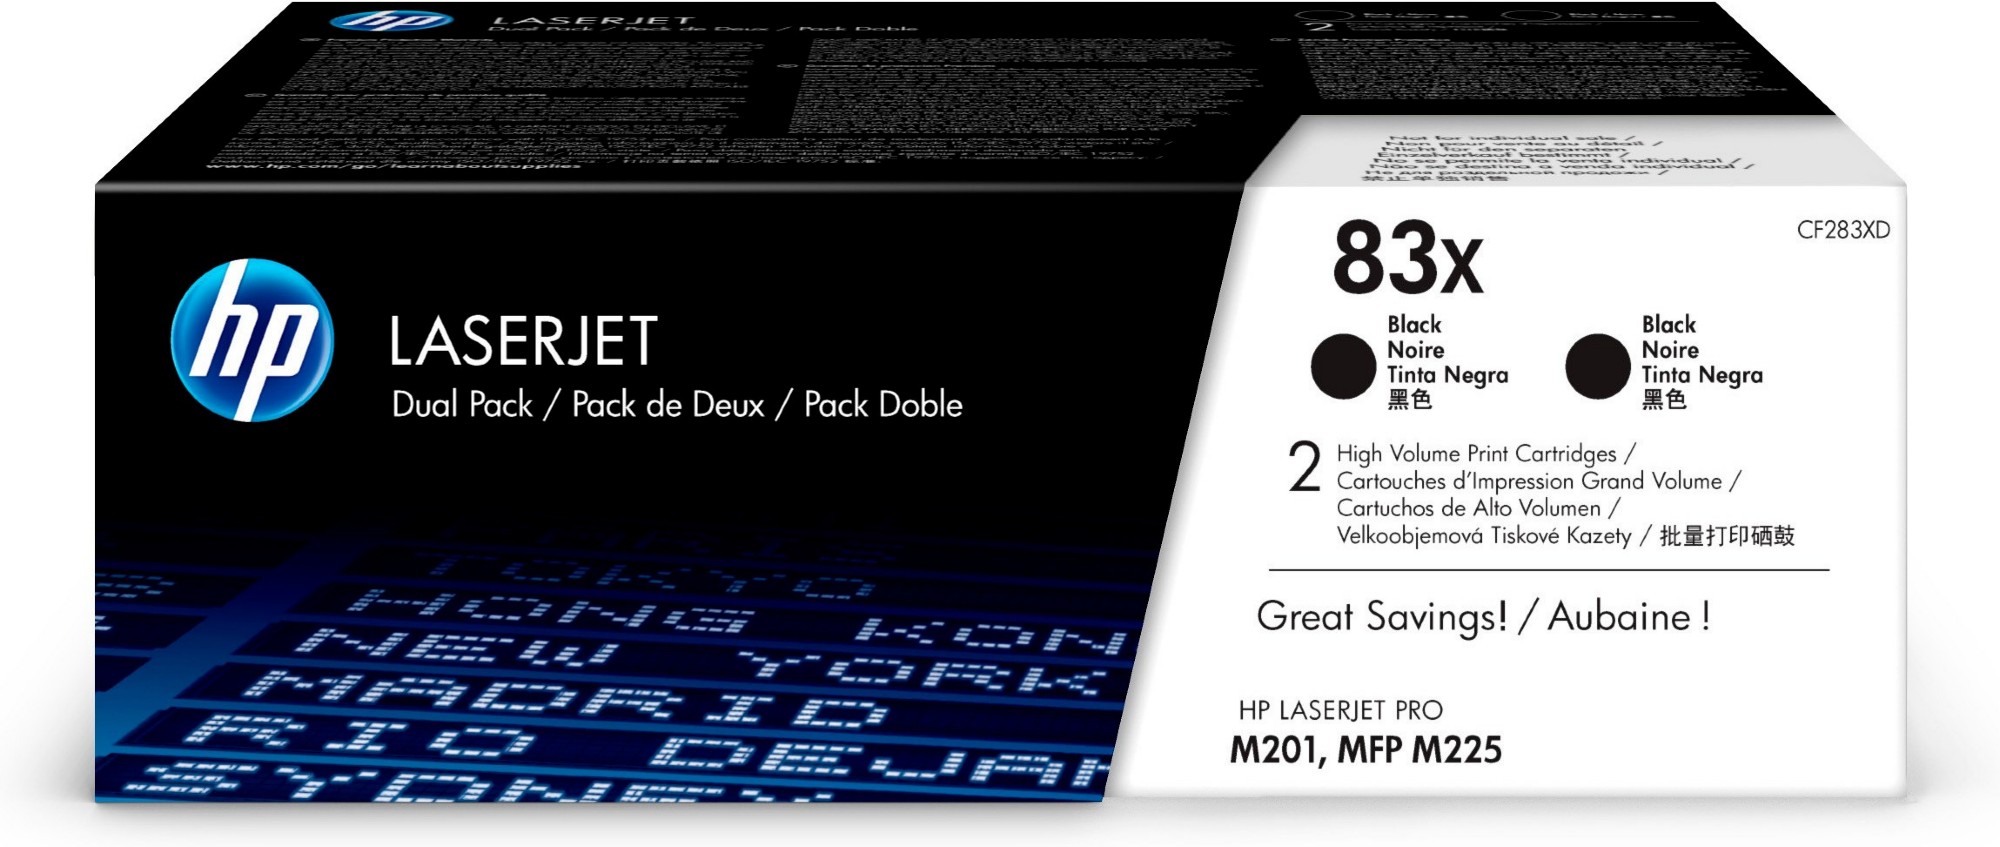 HP LaserJet 5N CF283XD High Capacity Black HP 83X Toner Cartridge Twin Pack, 2.2K Page Yield Each